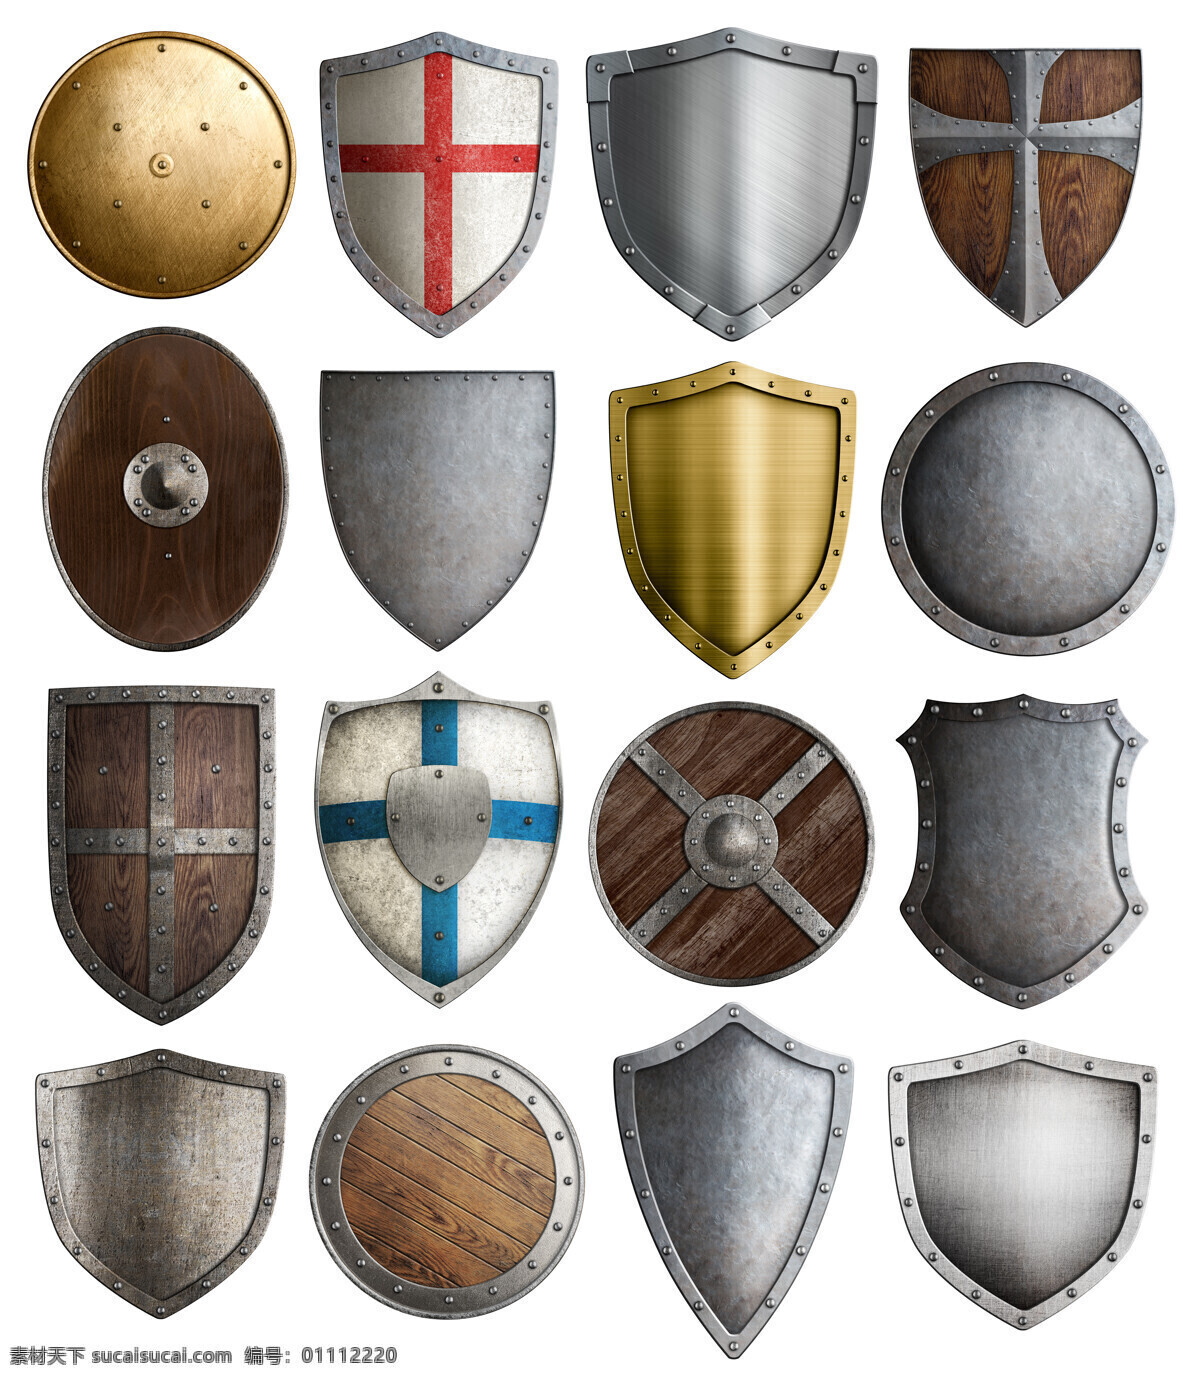 中世纪骑士 士兵金属盾牌 头盔 盔甲 金属盾牌